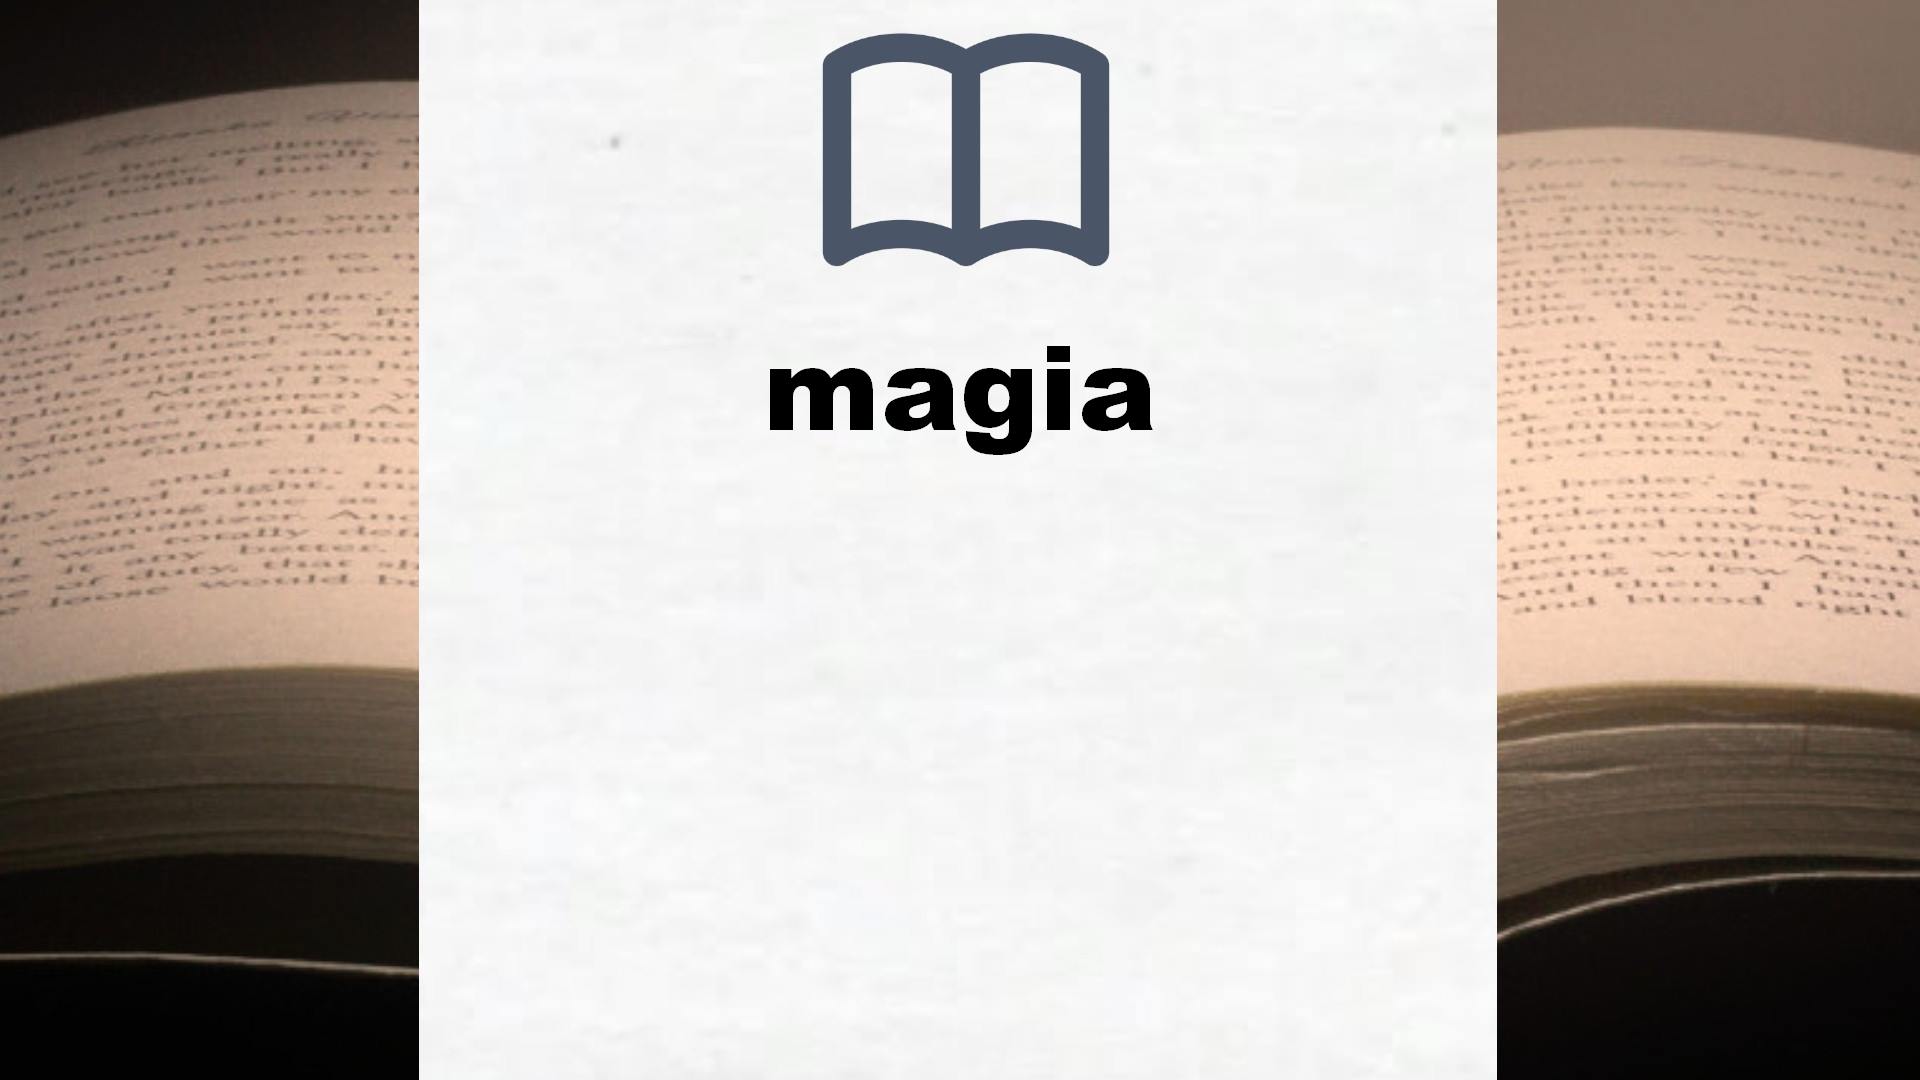 Libros sobre magia